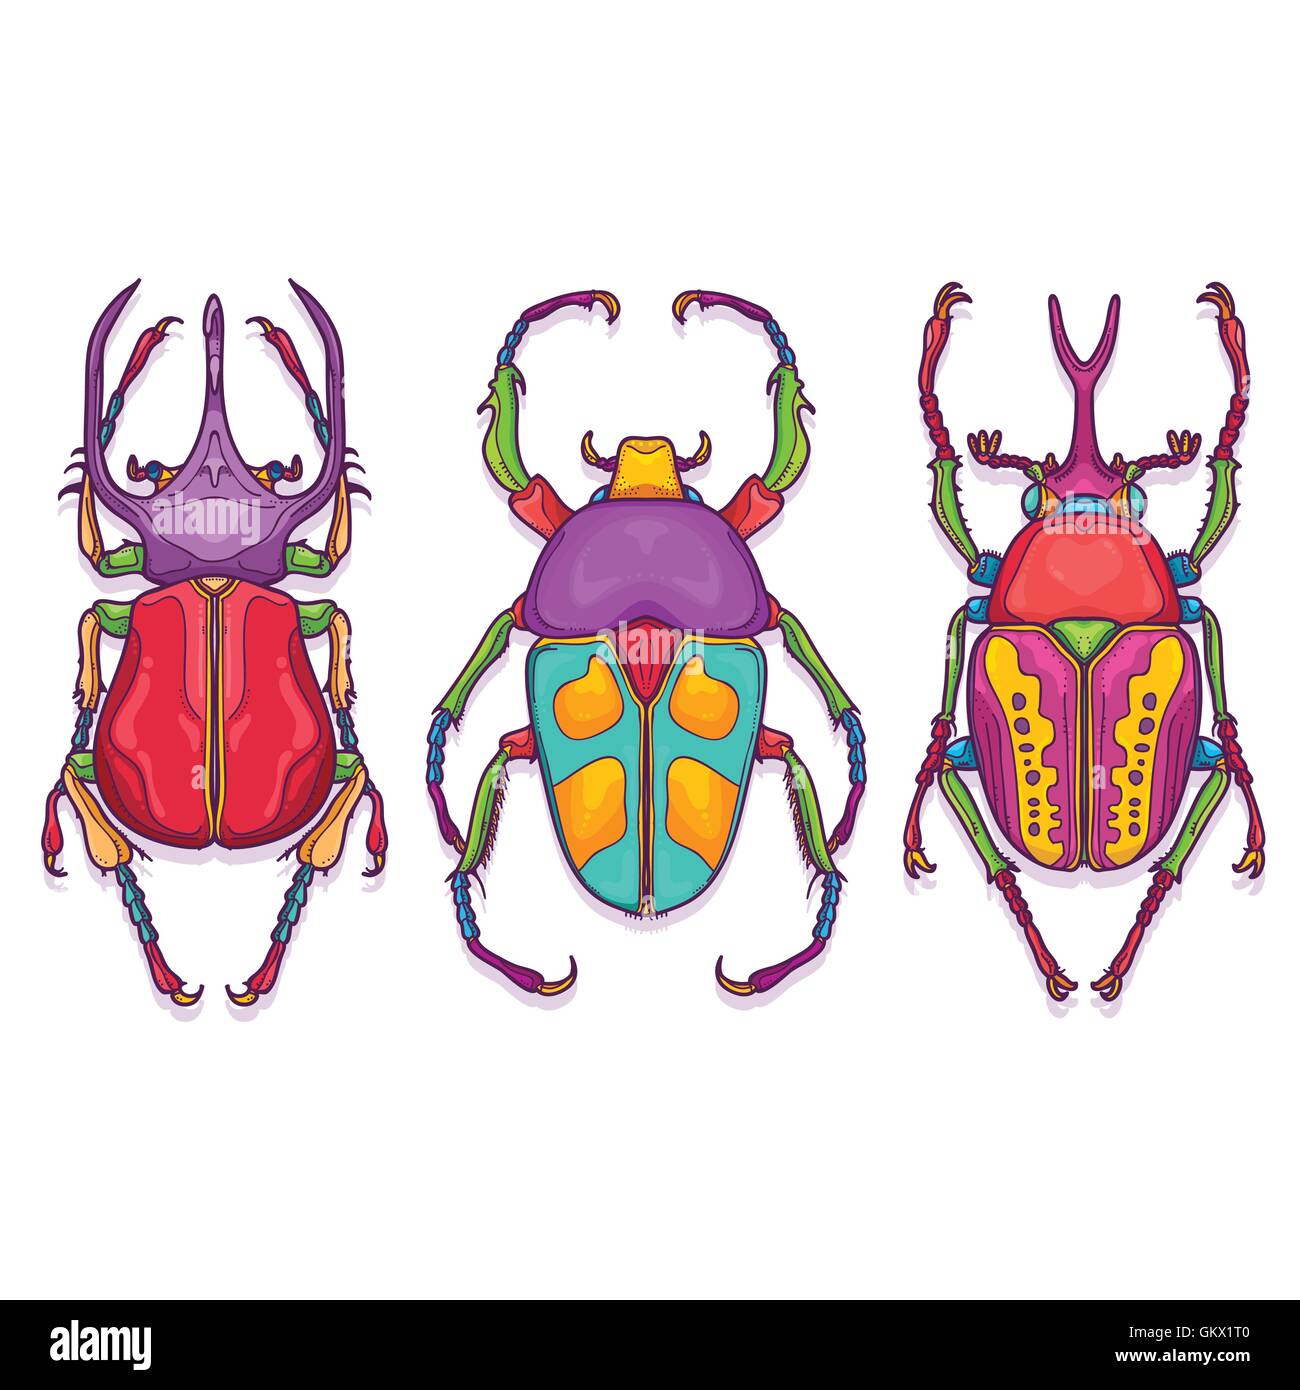 Vektor-Illustration von Insekten bunte Hand gezeichnet. Satz von 3 Beetle Bugs Draufsicht Stock Vektor